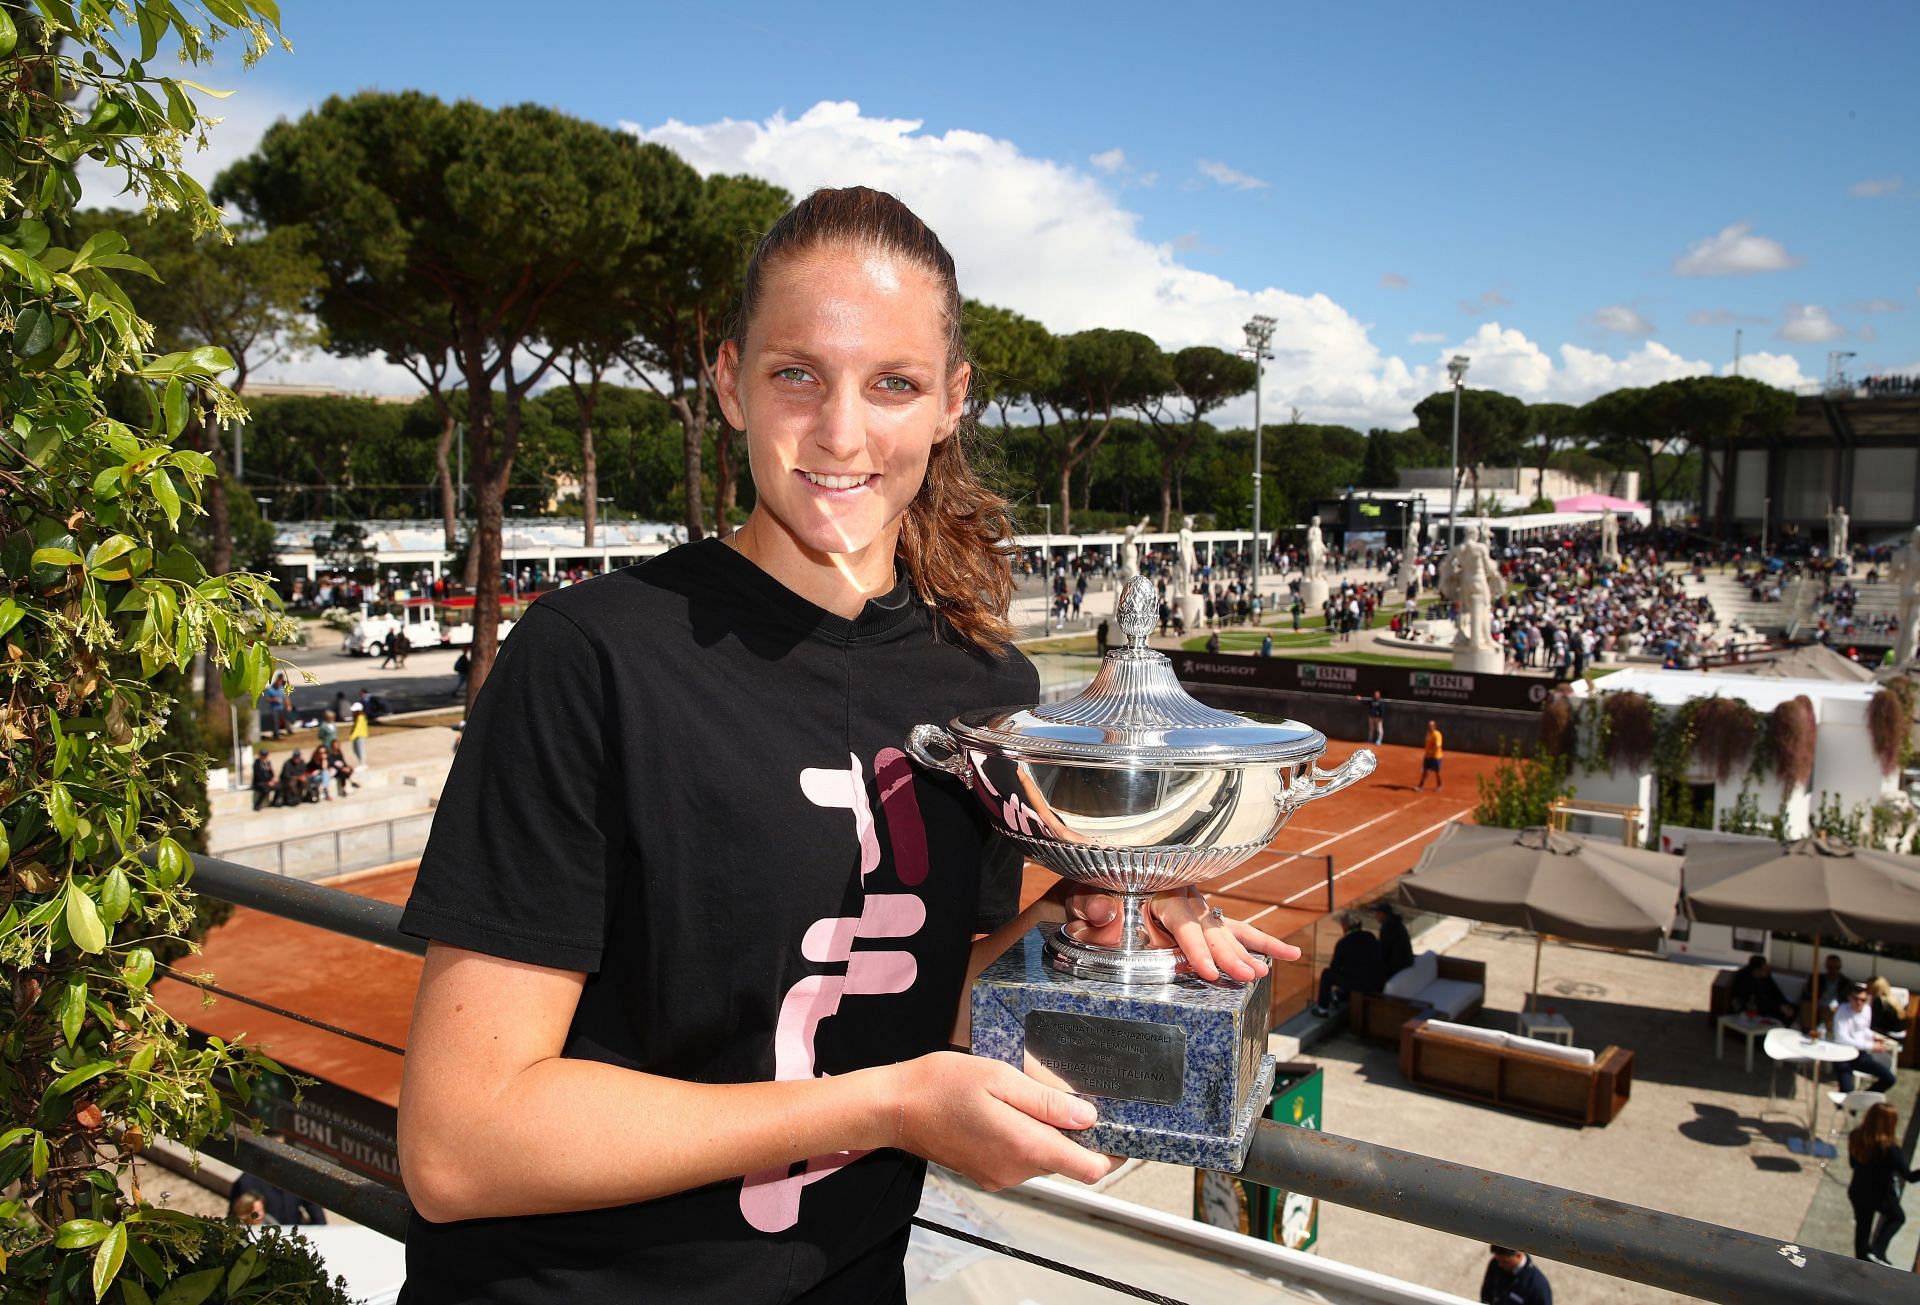 Karolina Pliskova at the 2019 Italian Open.